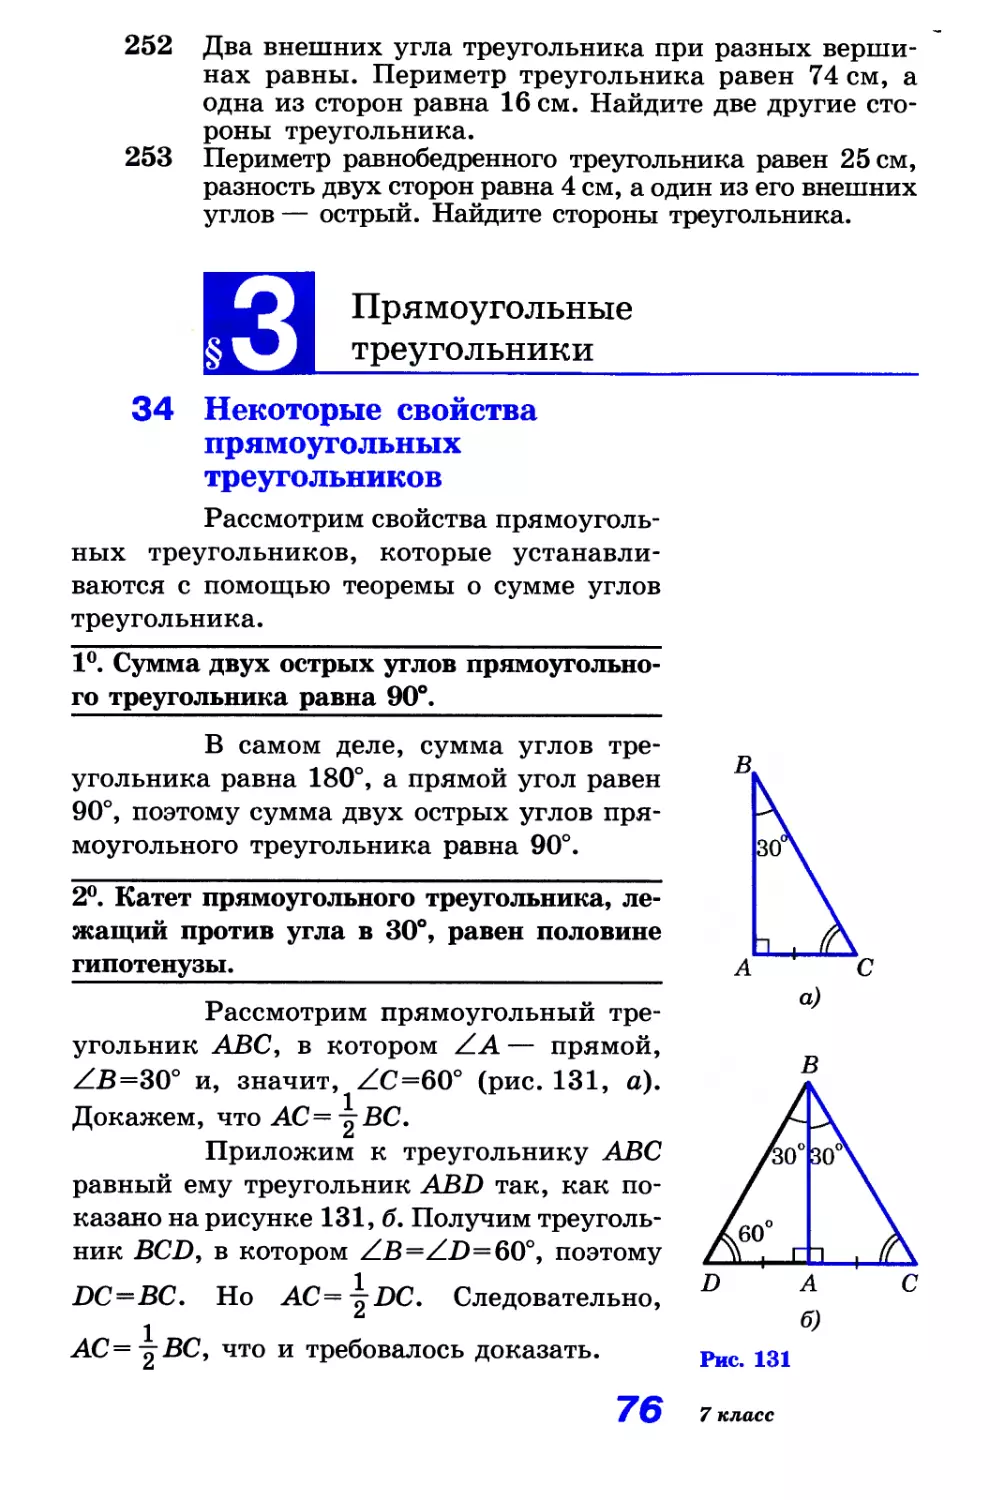 § 3. Прямоугольные треугольники